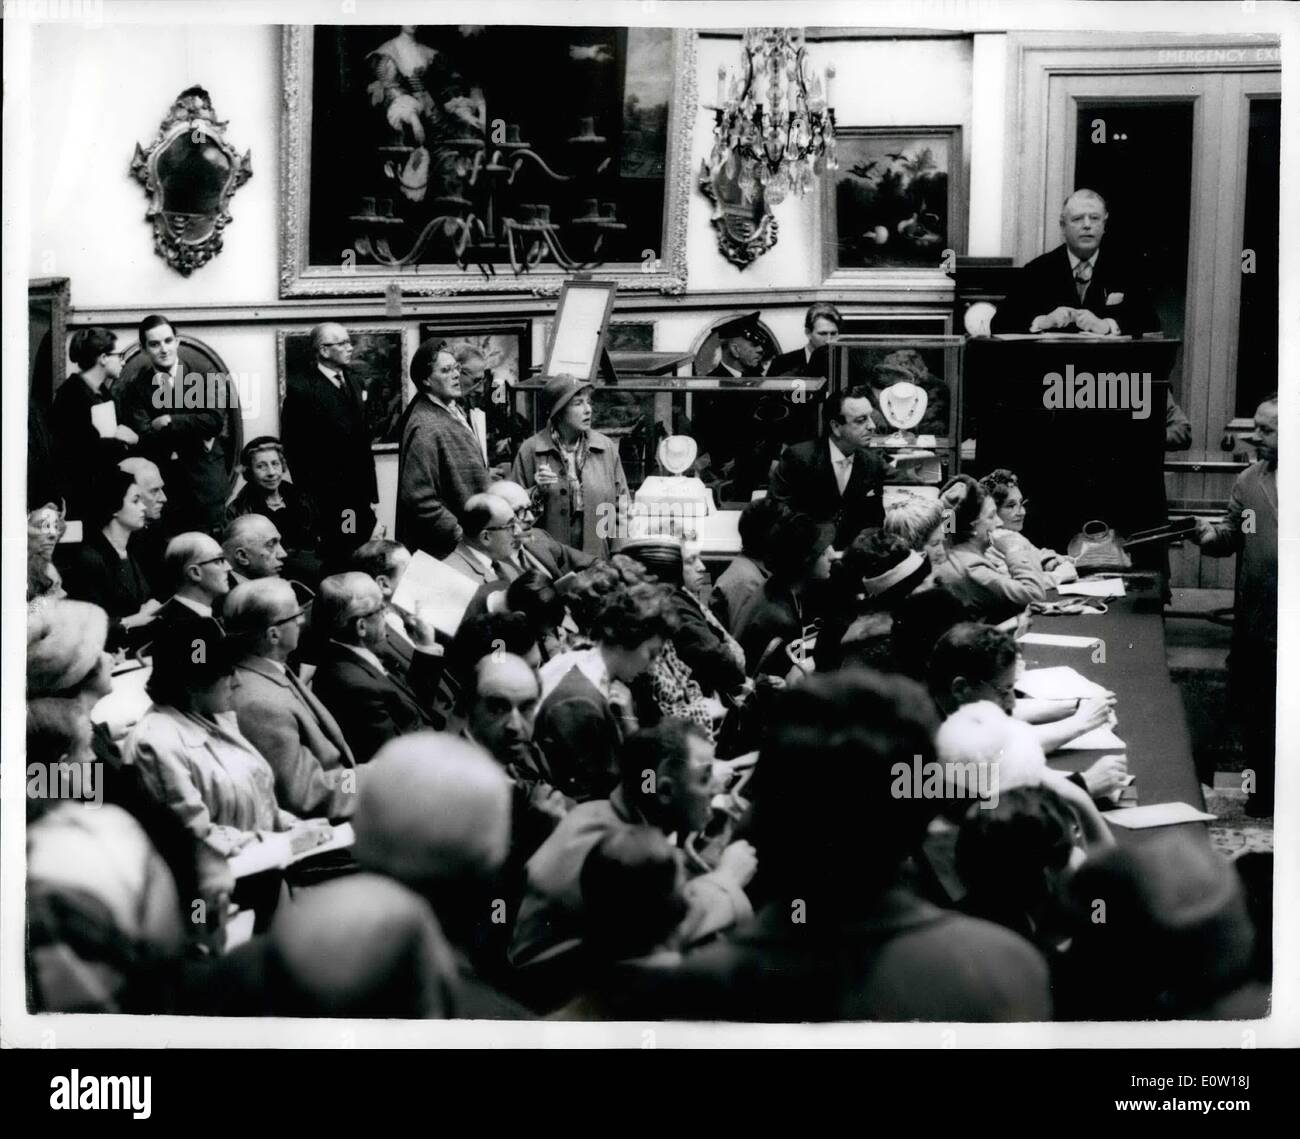 Nov 11, 1960 - VENTA DE JOYAS PERTENECIENTES AL CONDE DE HAREWOOD OBTIENE  &;81,291 libras de Christie's cinco piezas de joyería pertenecientes al  Conde de HAREWOOD, fueron vendidos en Christie's hoy para